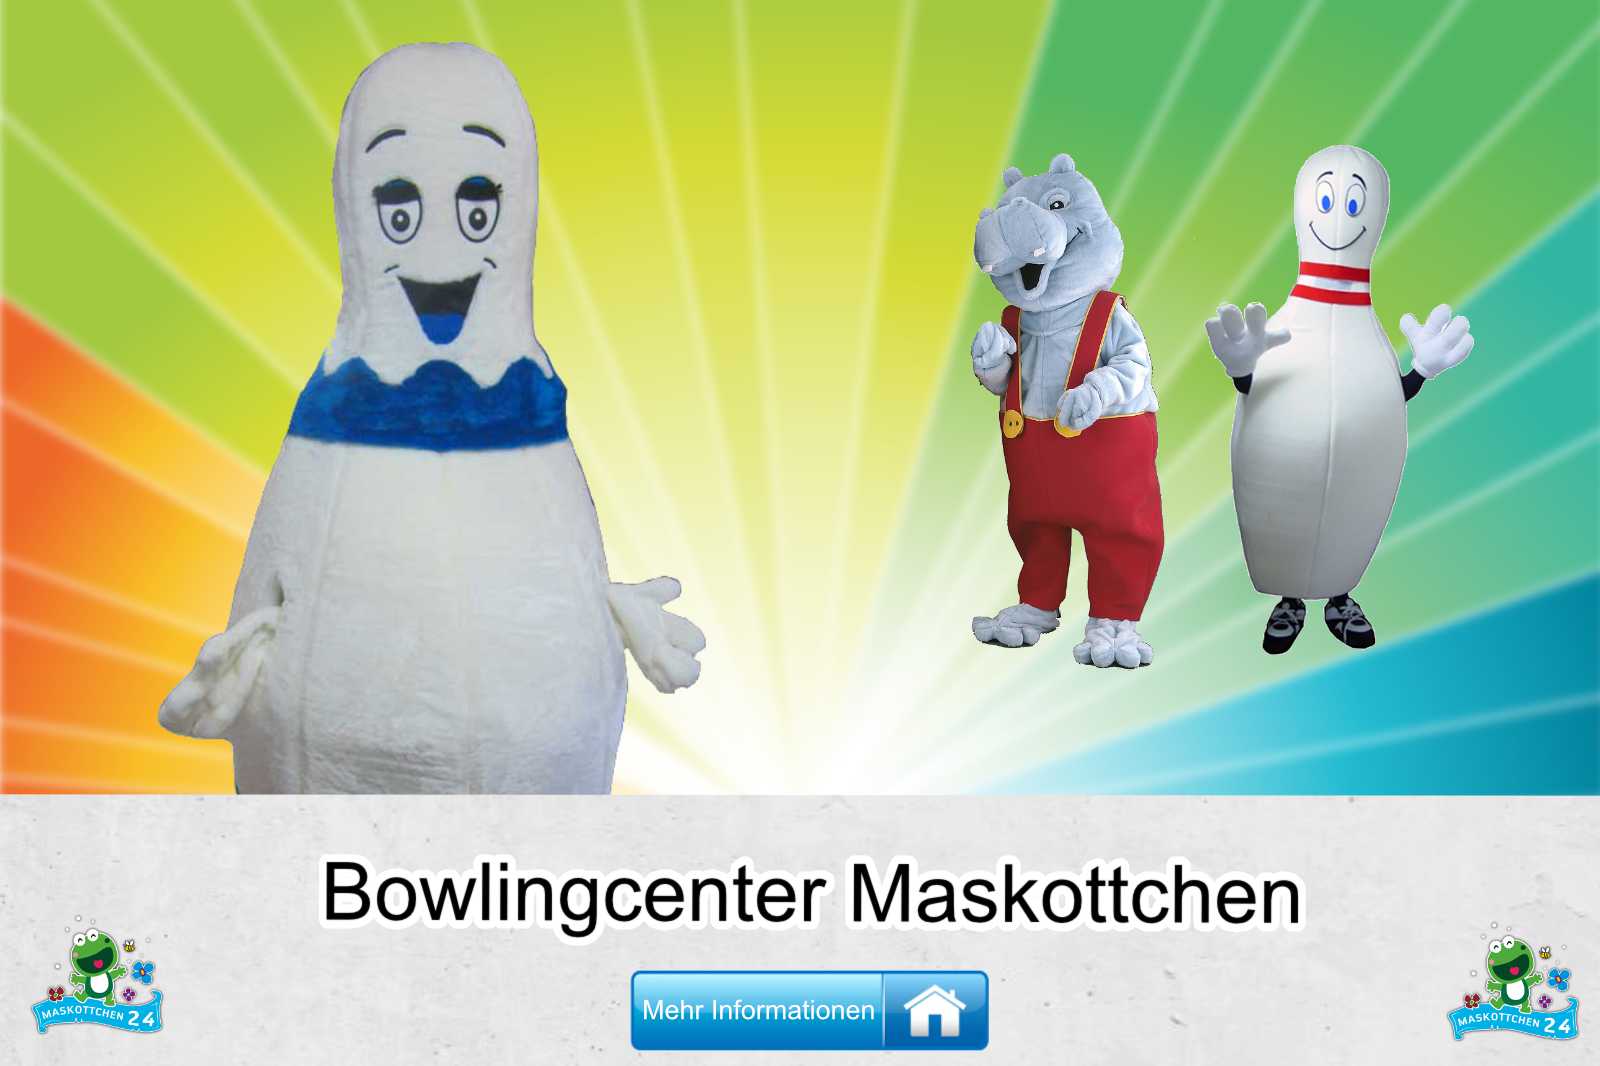 Bowlingcenter Kostüm kaufen, günstige Produktion / Herstellung